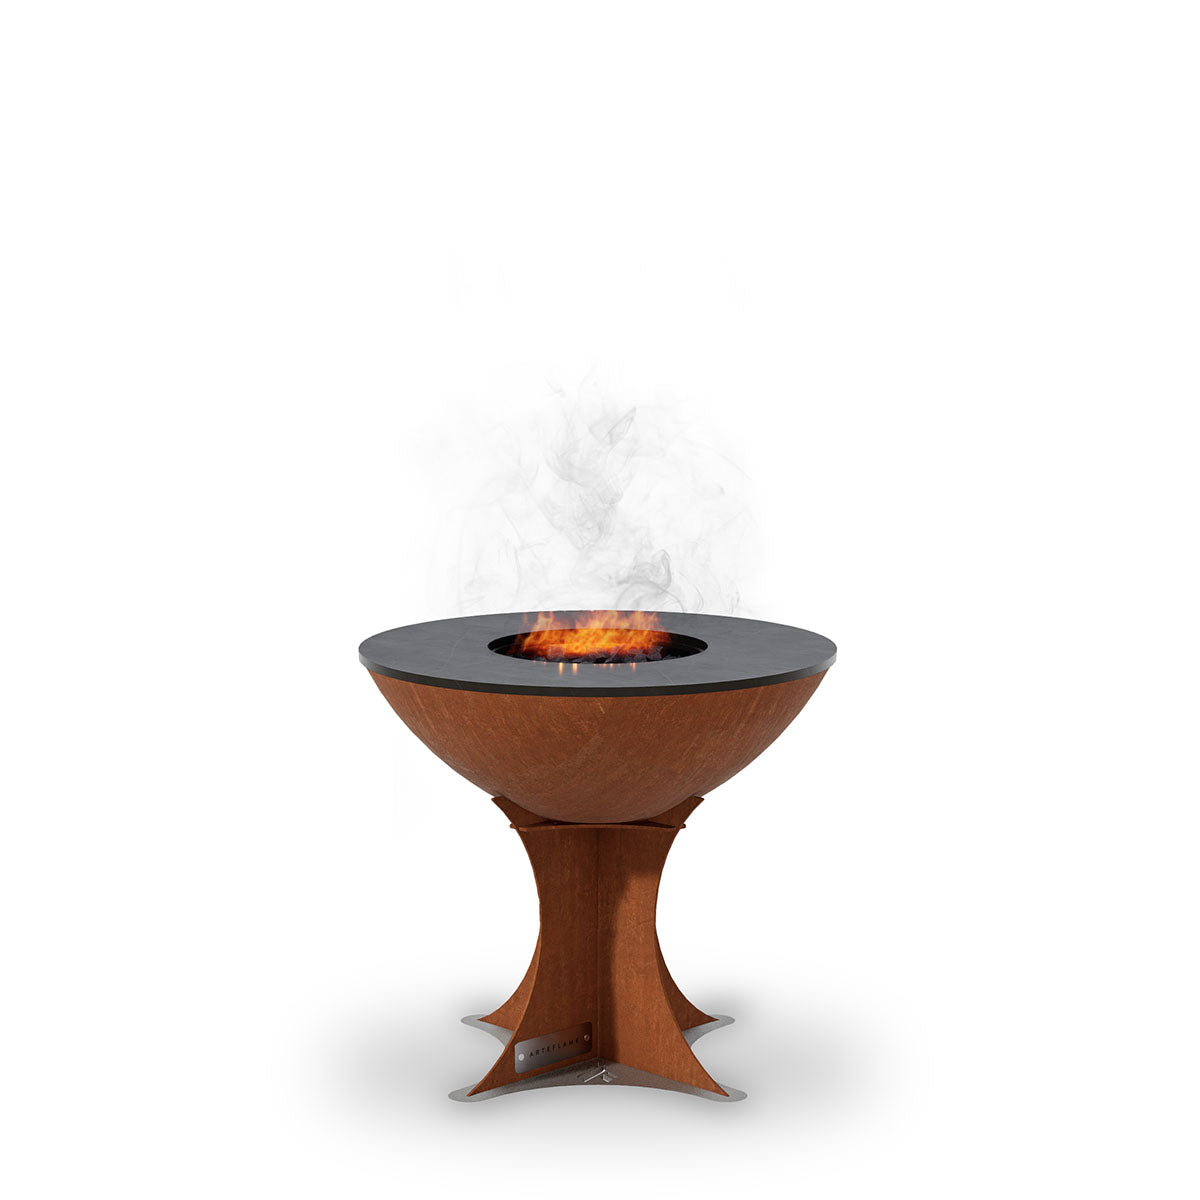 Kompaktowy grill węglowy Arteflame 20” do autentycznego gotowania na świeżym powietrzu | Arteflam